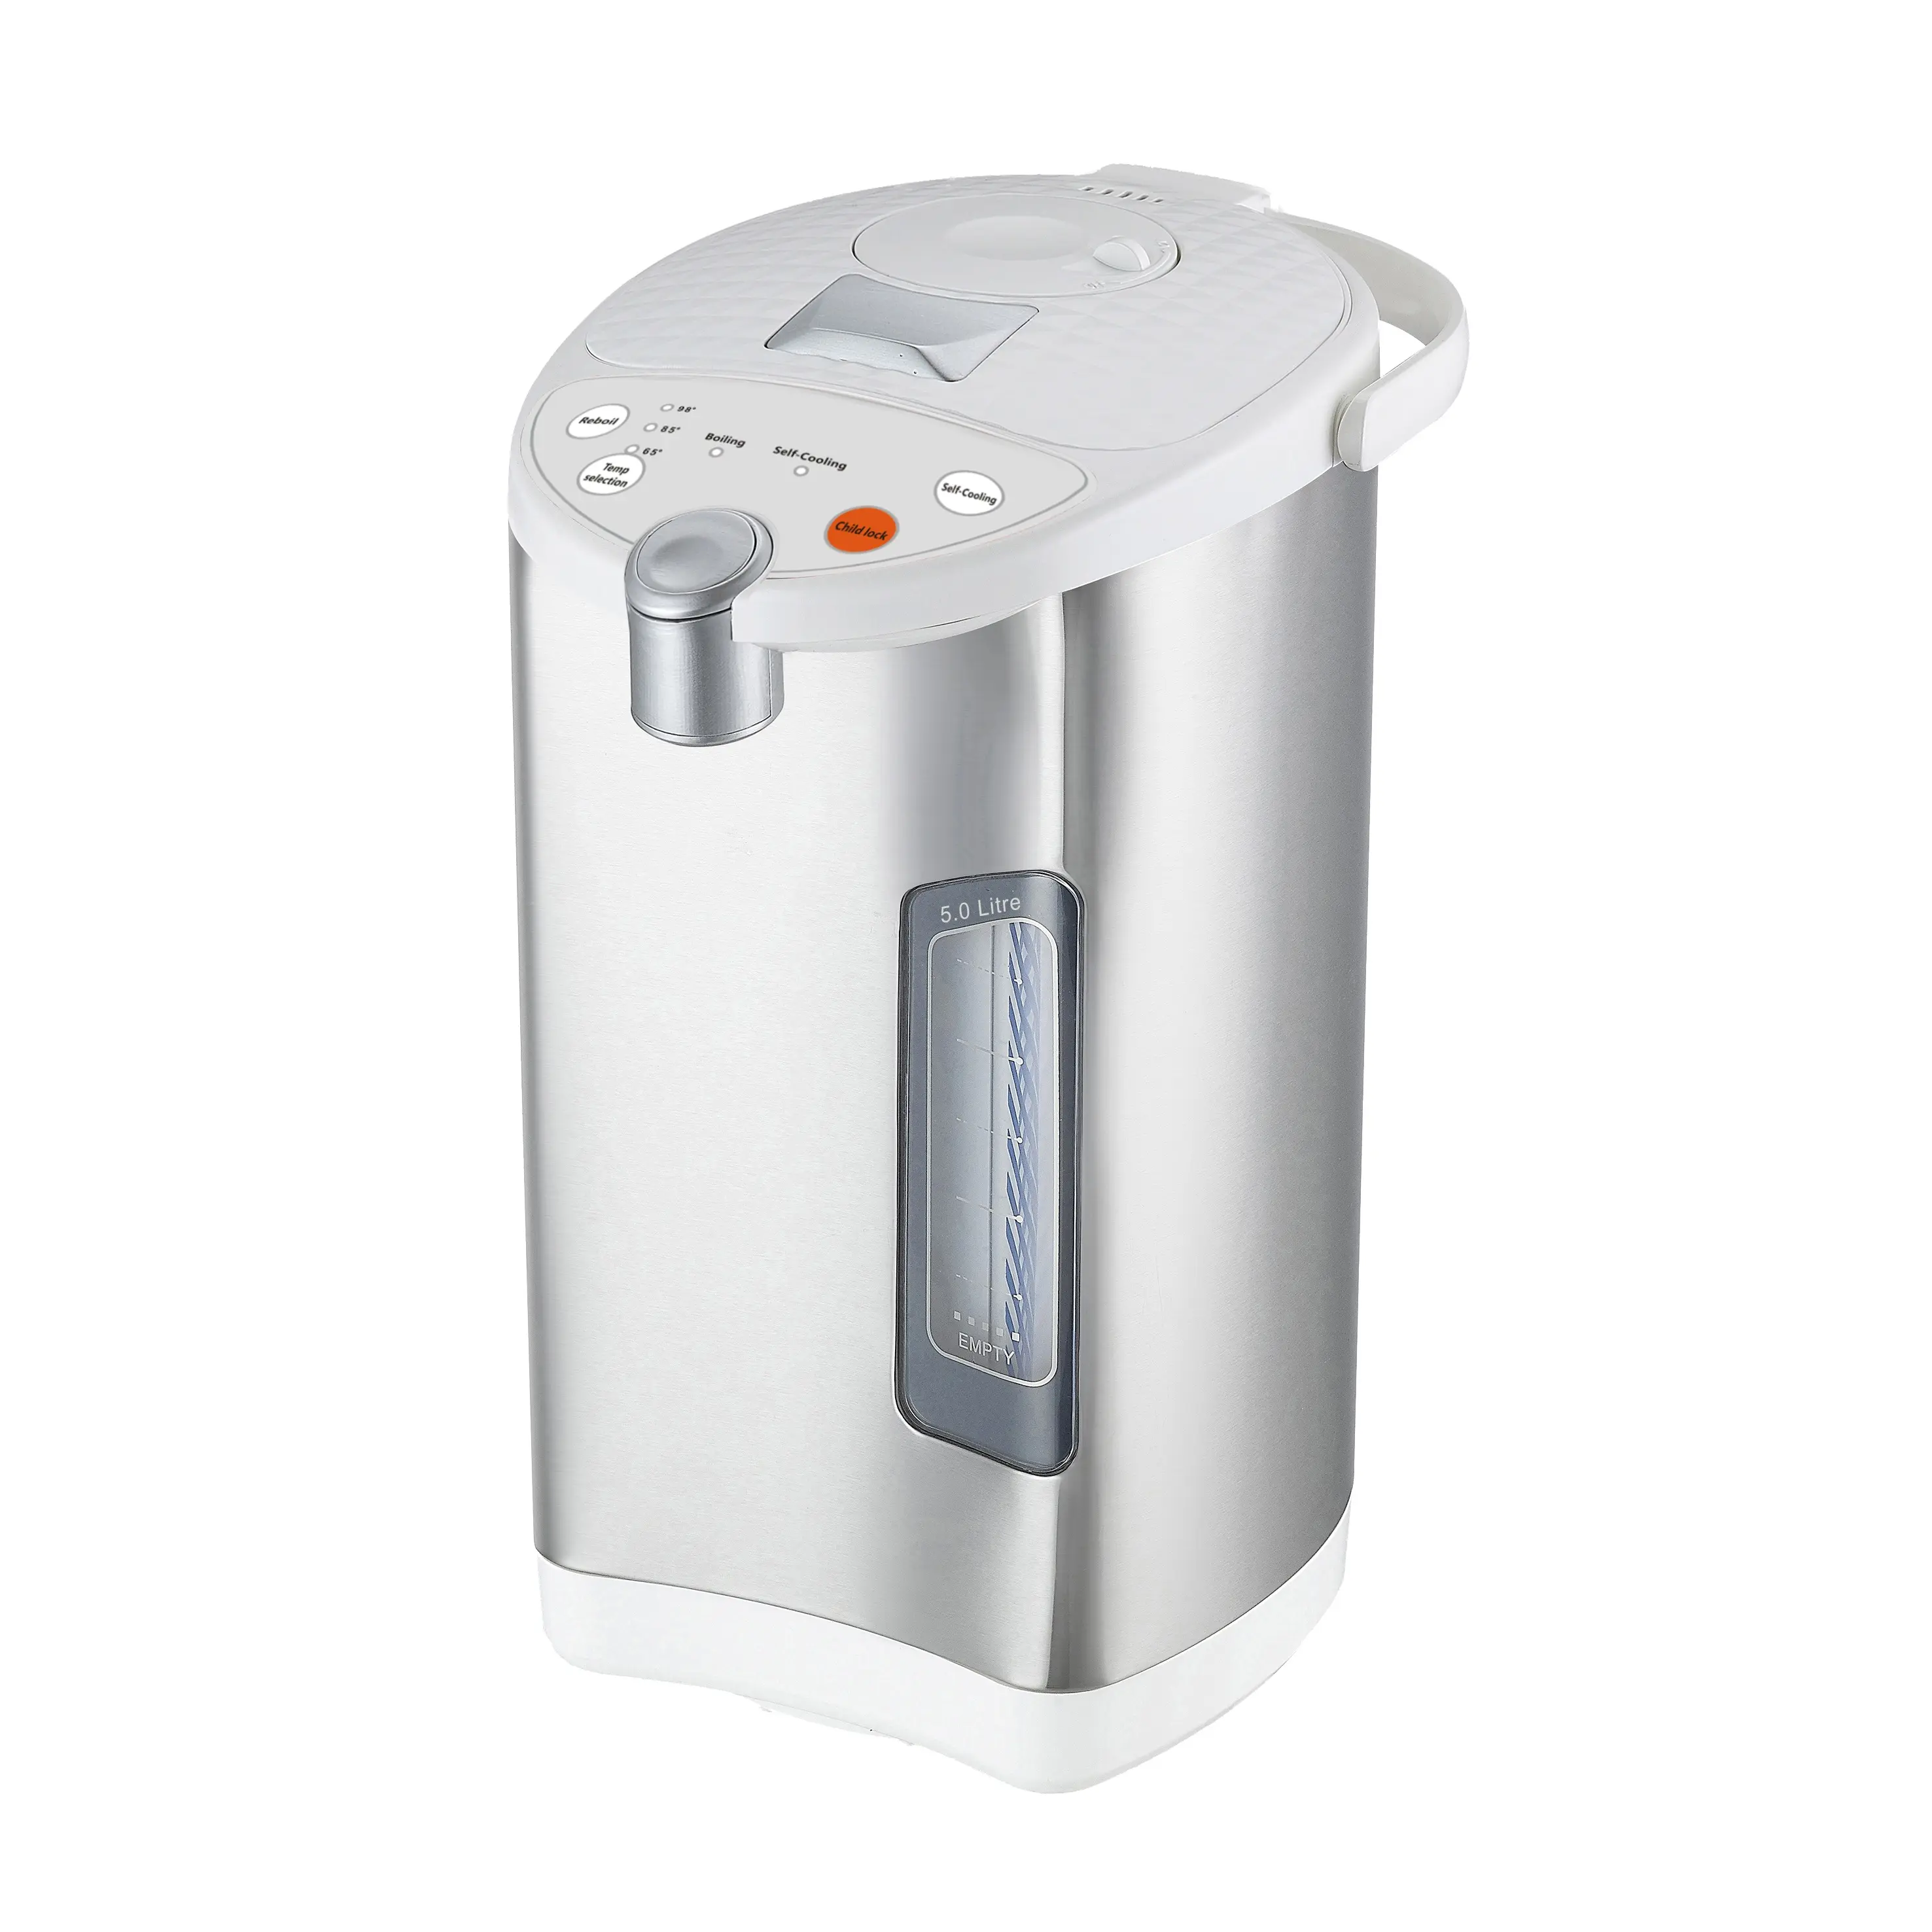 Dispenser per caldaie termo elettrico elettrico da 5 litri per uso domestico termo per acqua calda